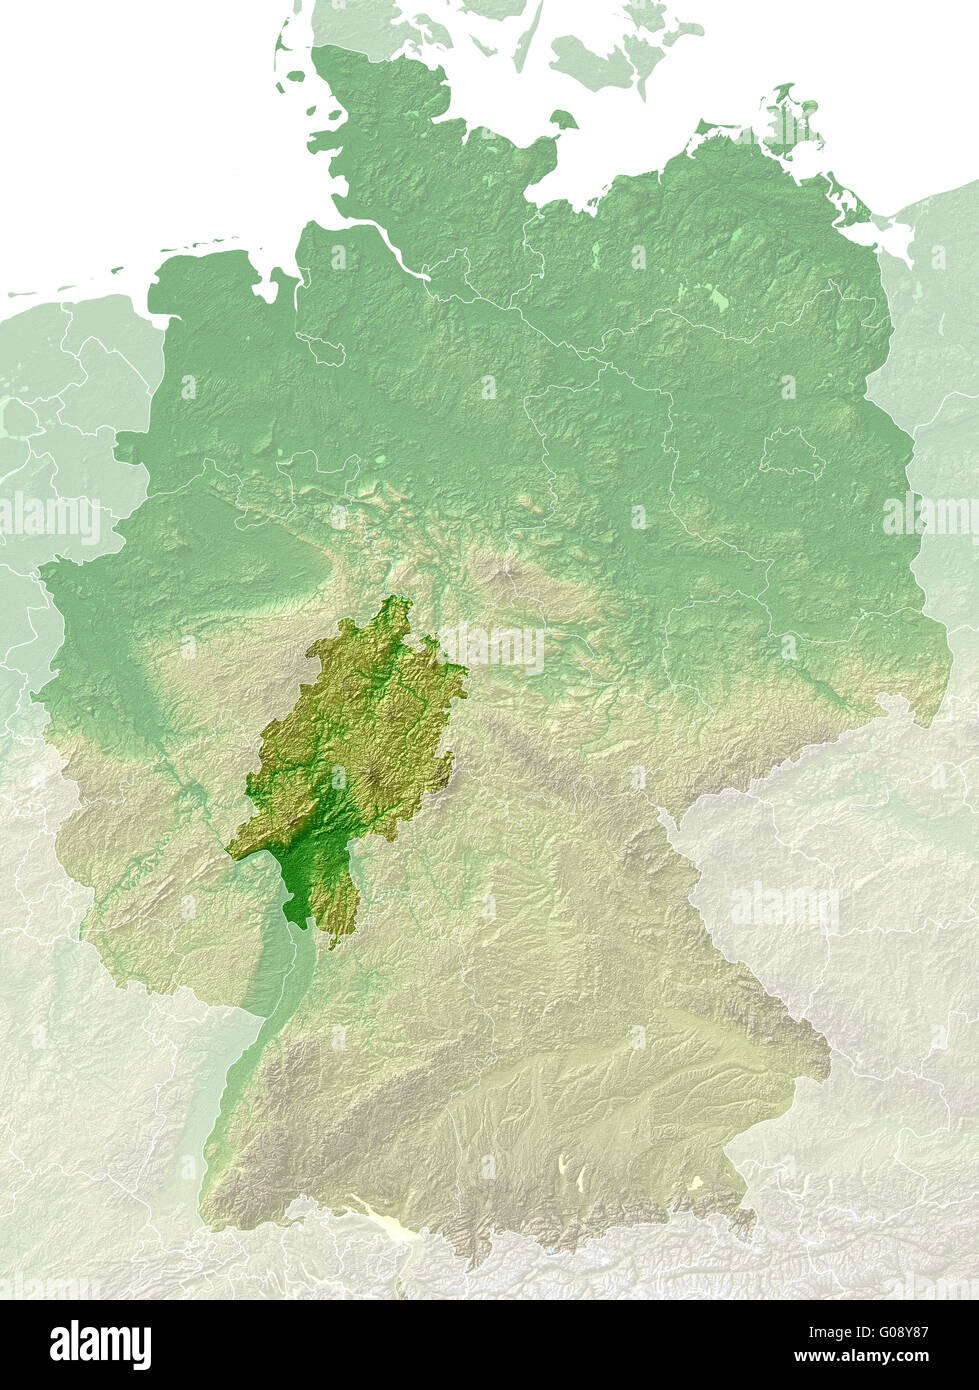 Hessen - topographische Reliefkarte Deutschland Stockfotografie - Alamy